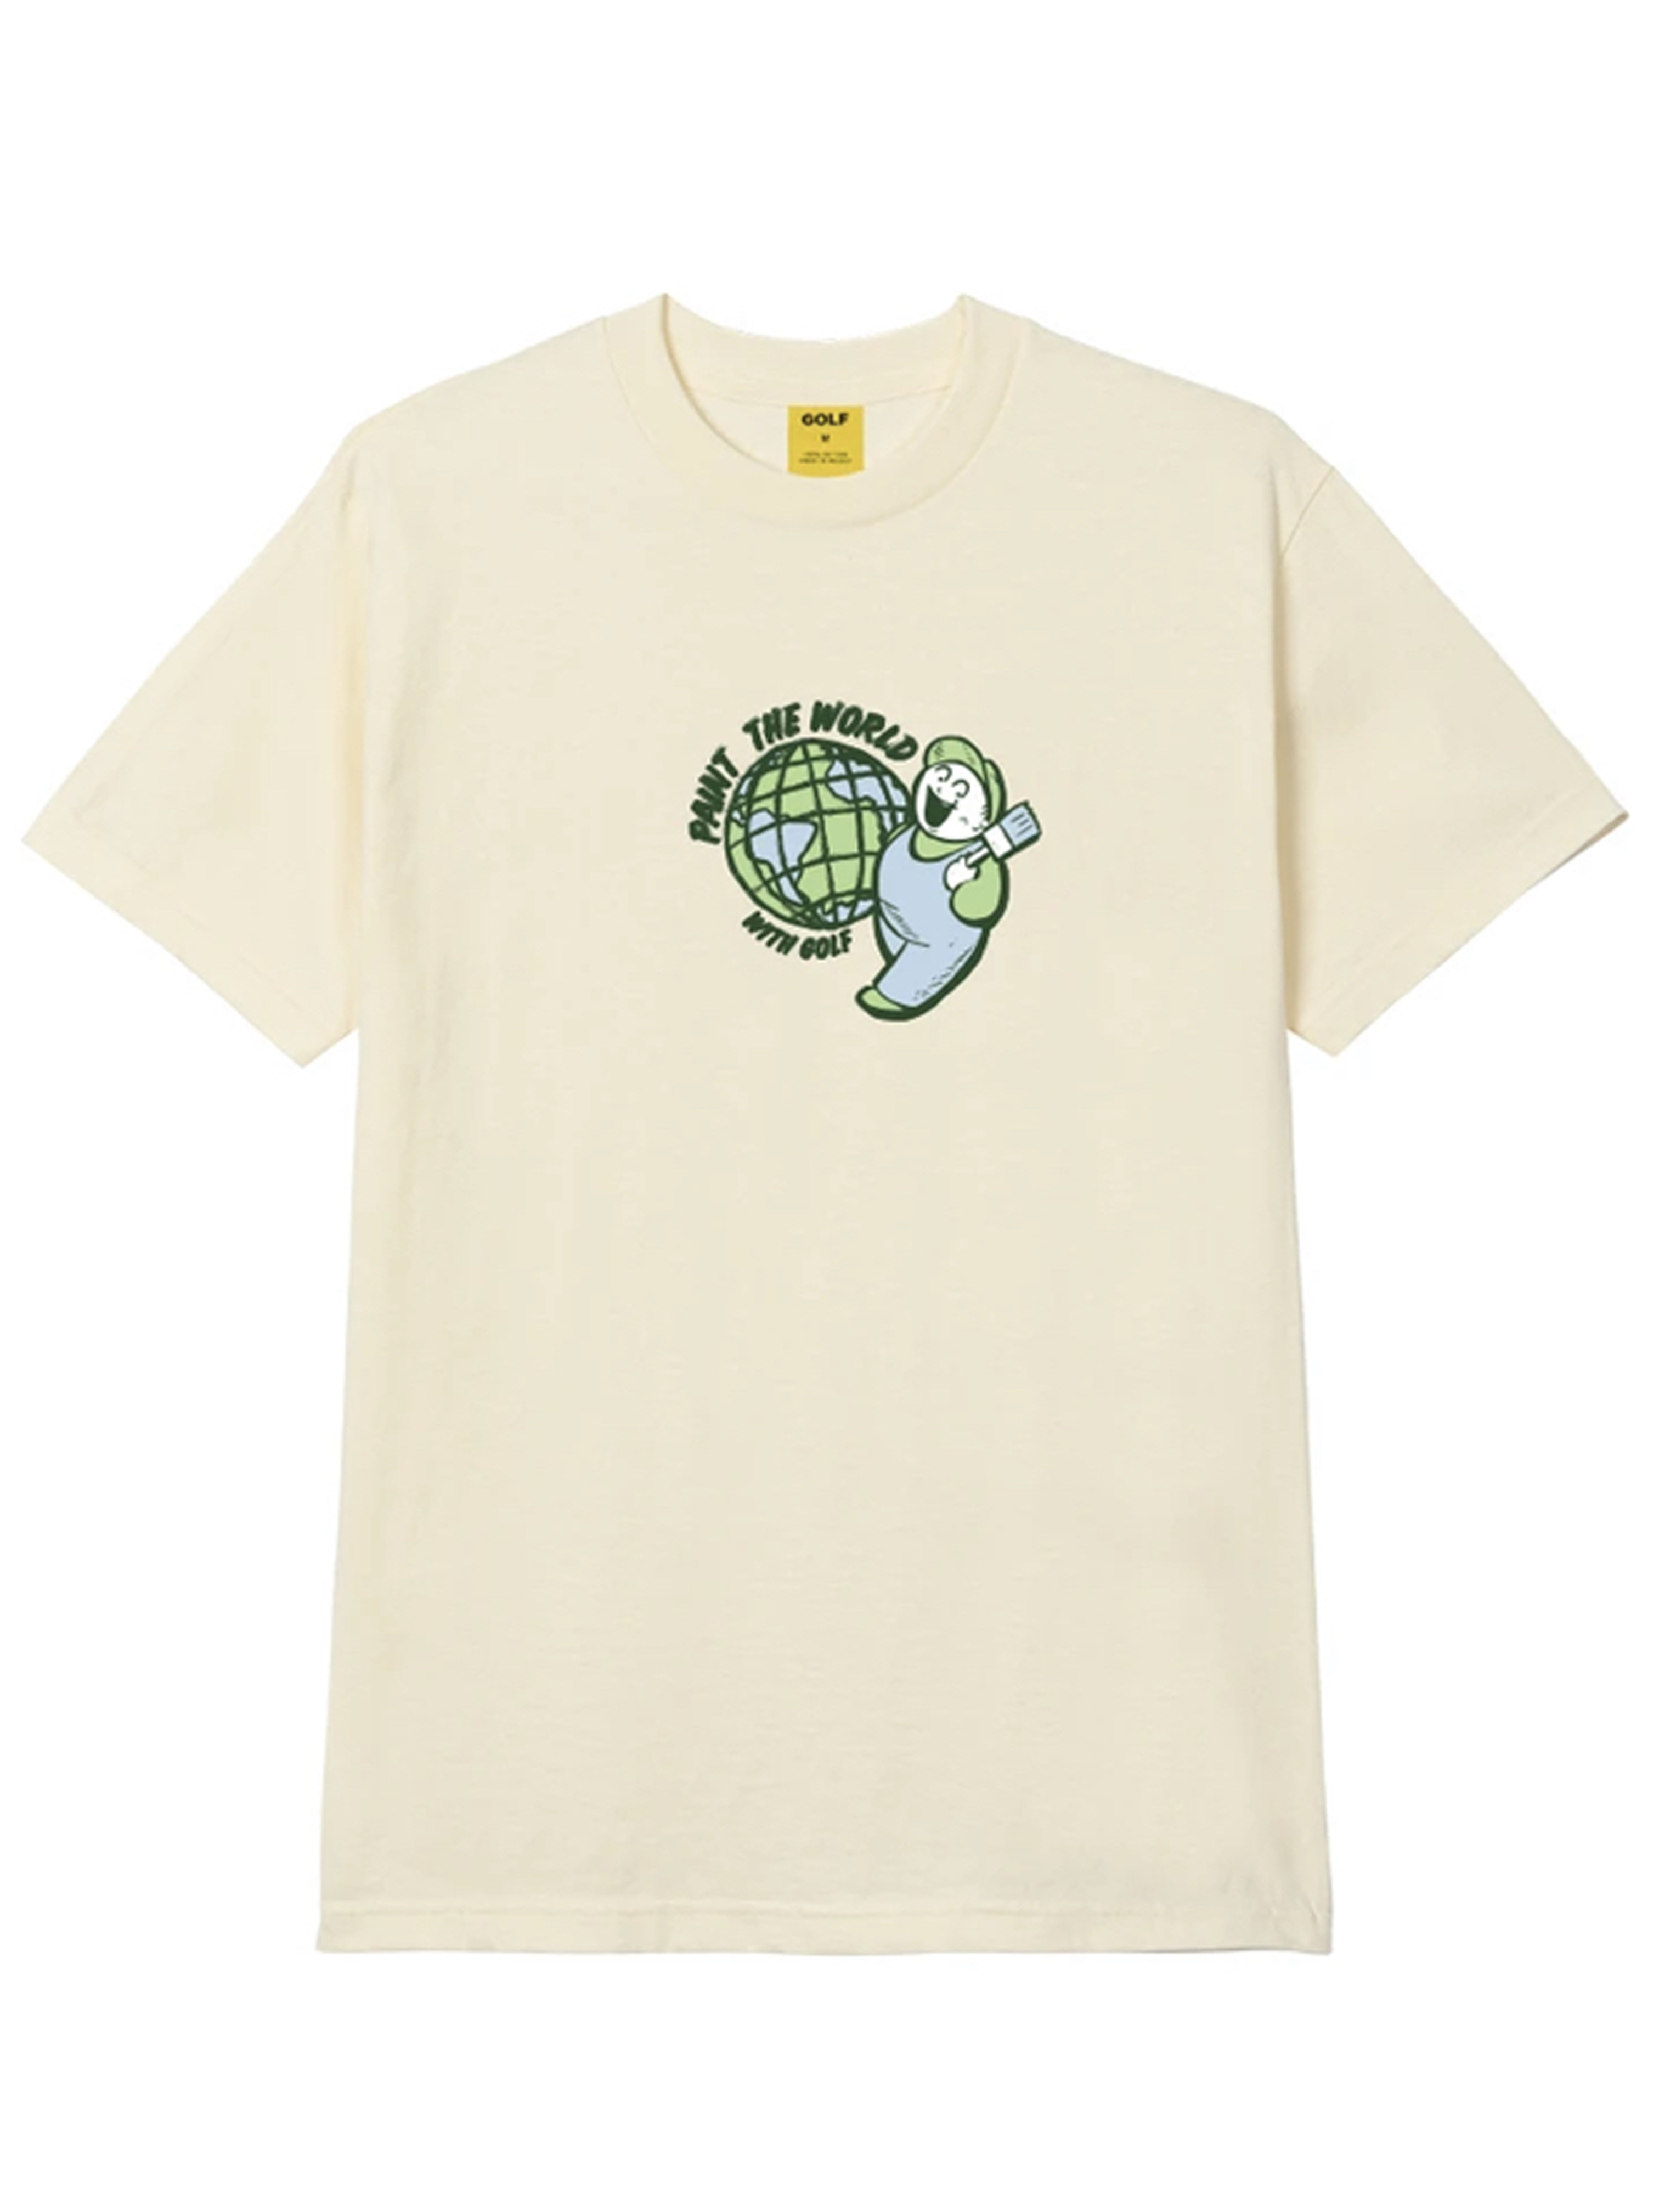 golf wang Tシャツ - Tシャツ/カットソー(半袖/袖なし)